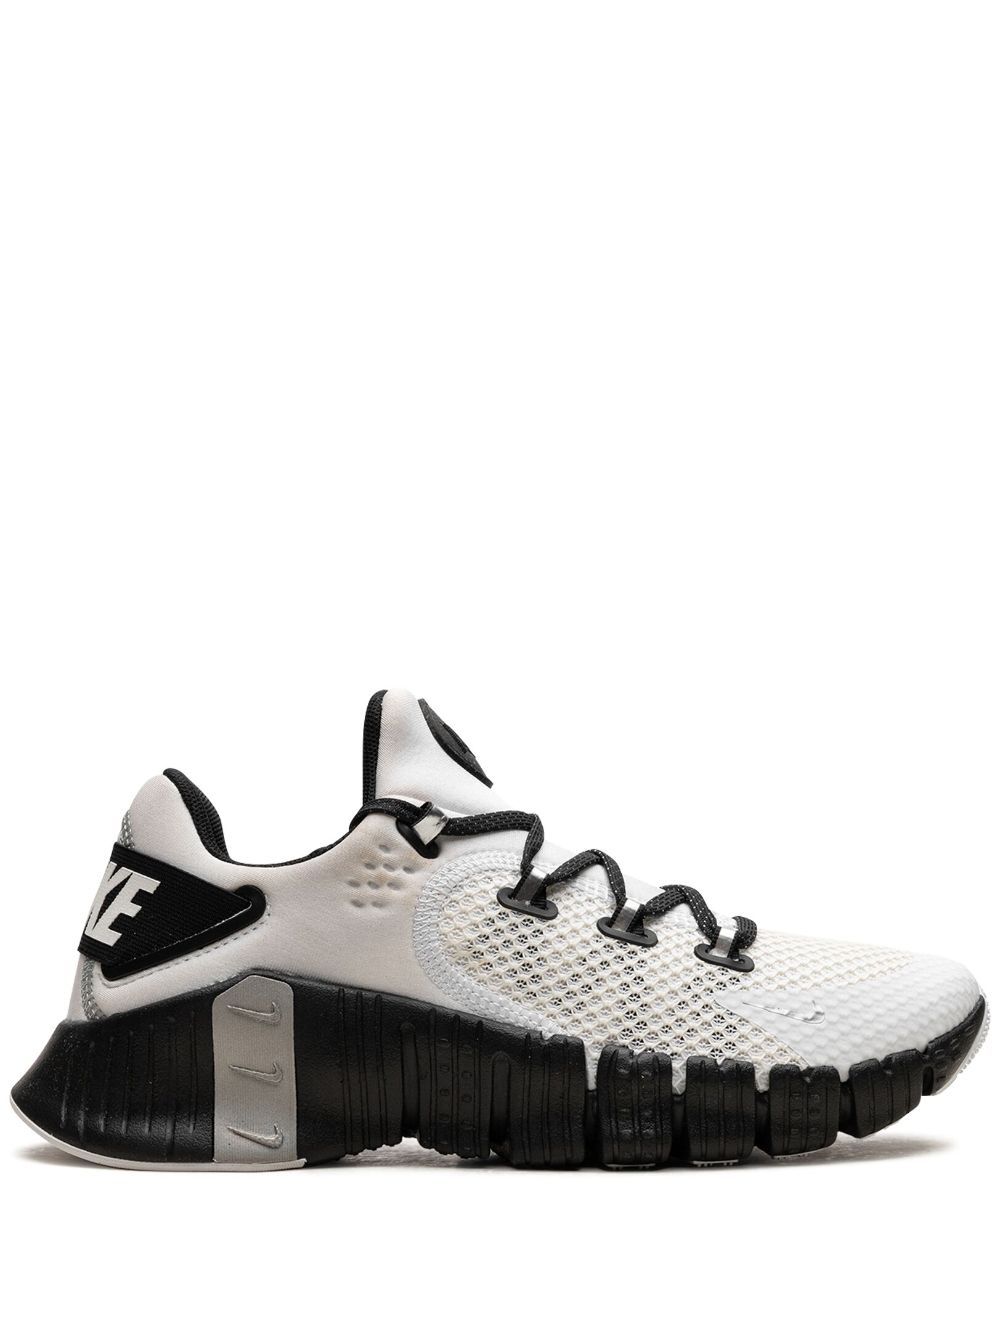 Nike Free Metcon 4 "White Black" sneakers